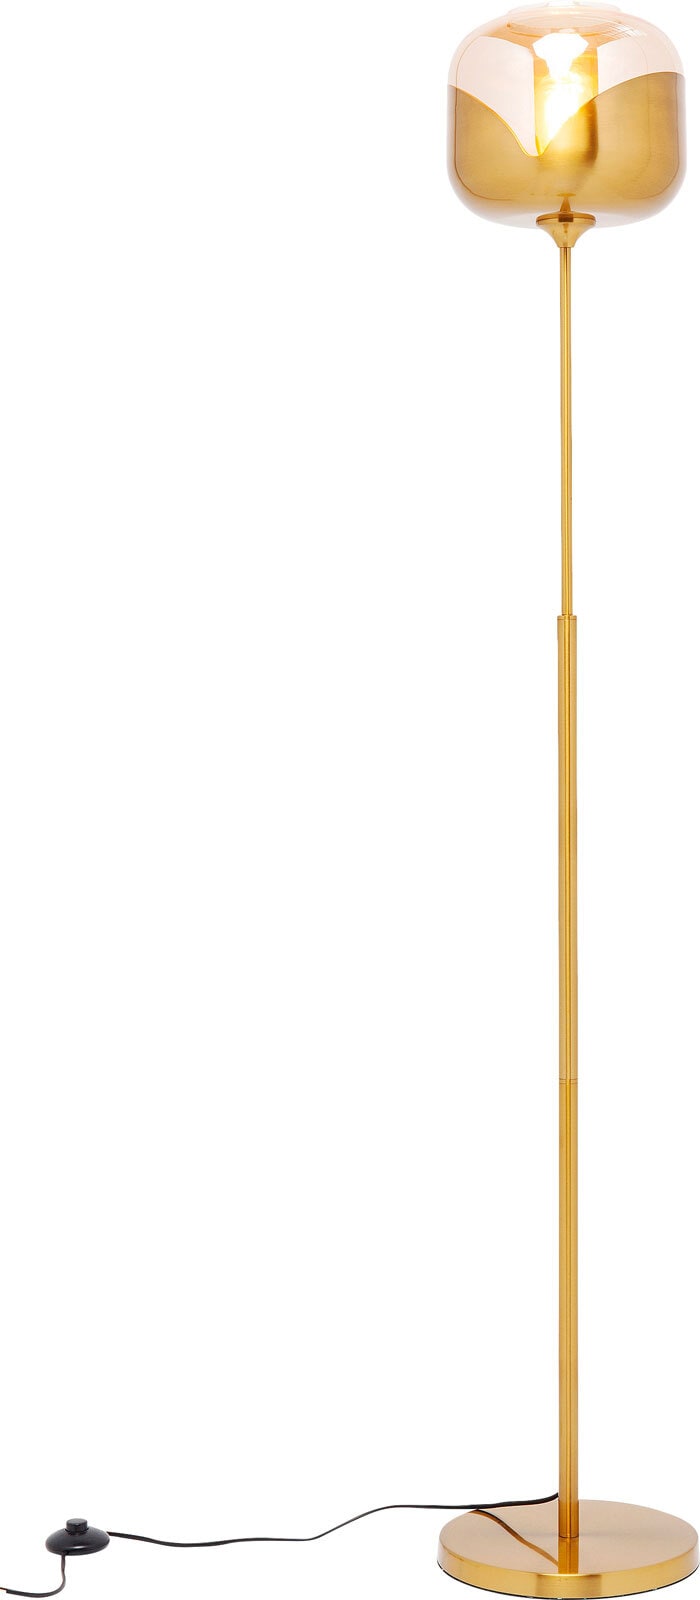 KARE DESIGN Retrofit Stehlampe GLOBLET BALL goldfarbig